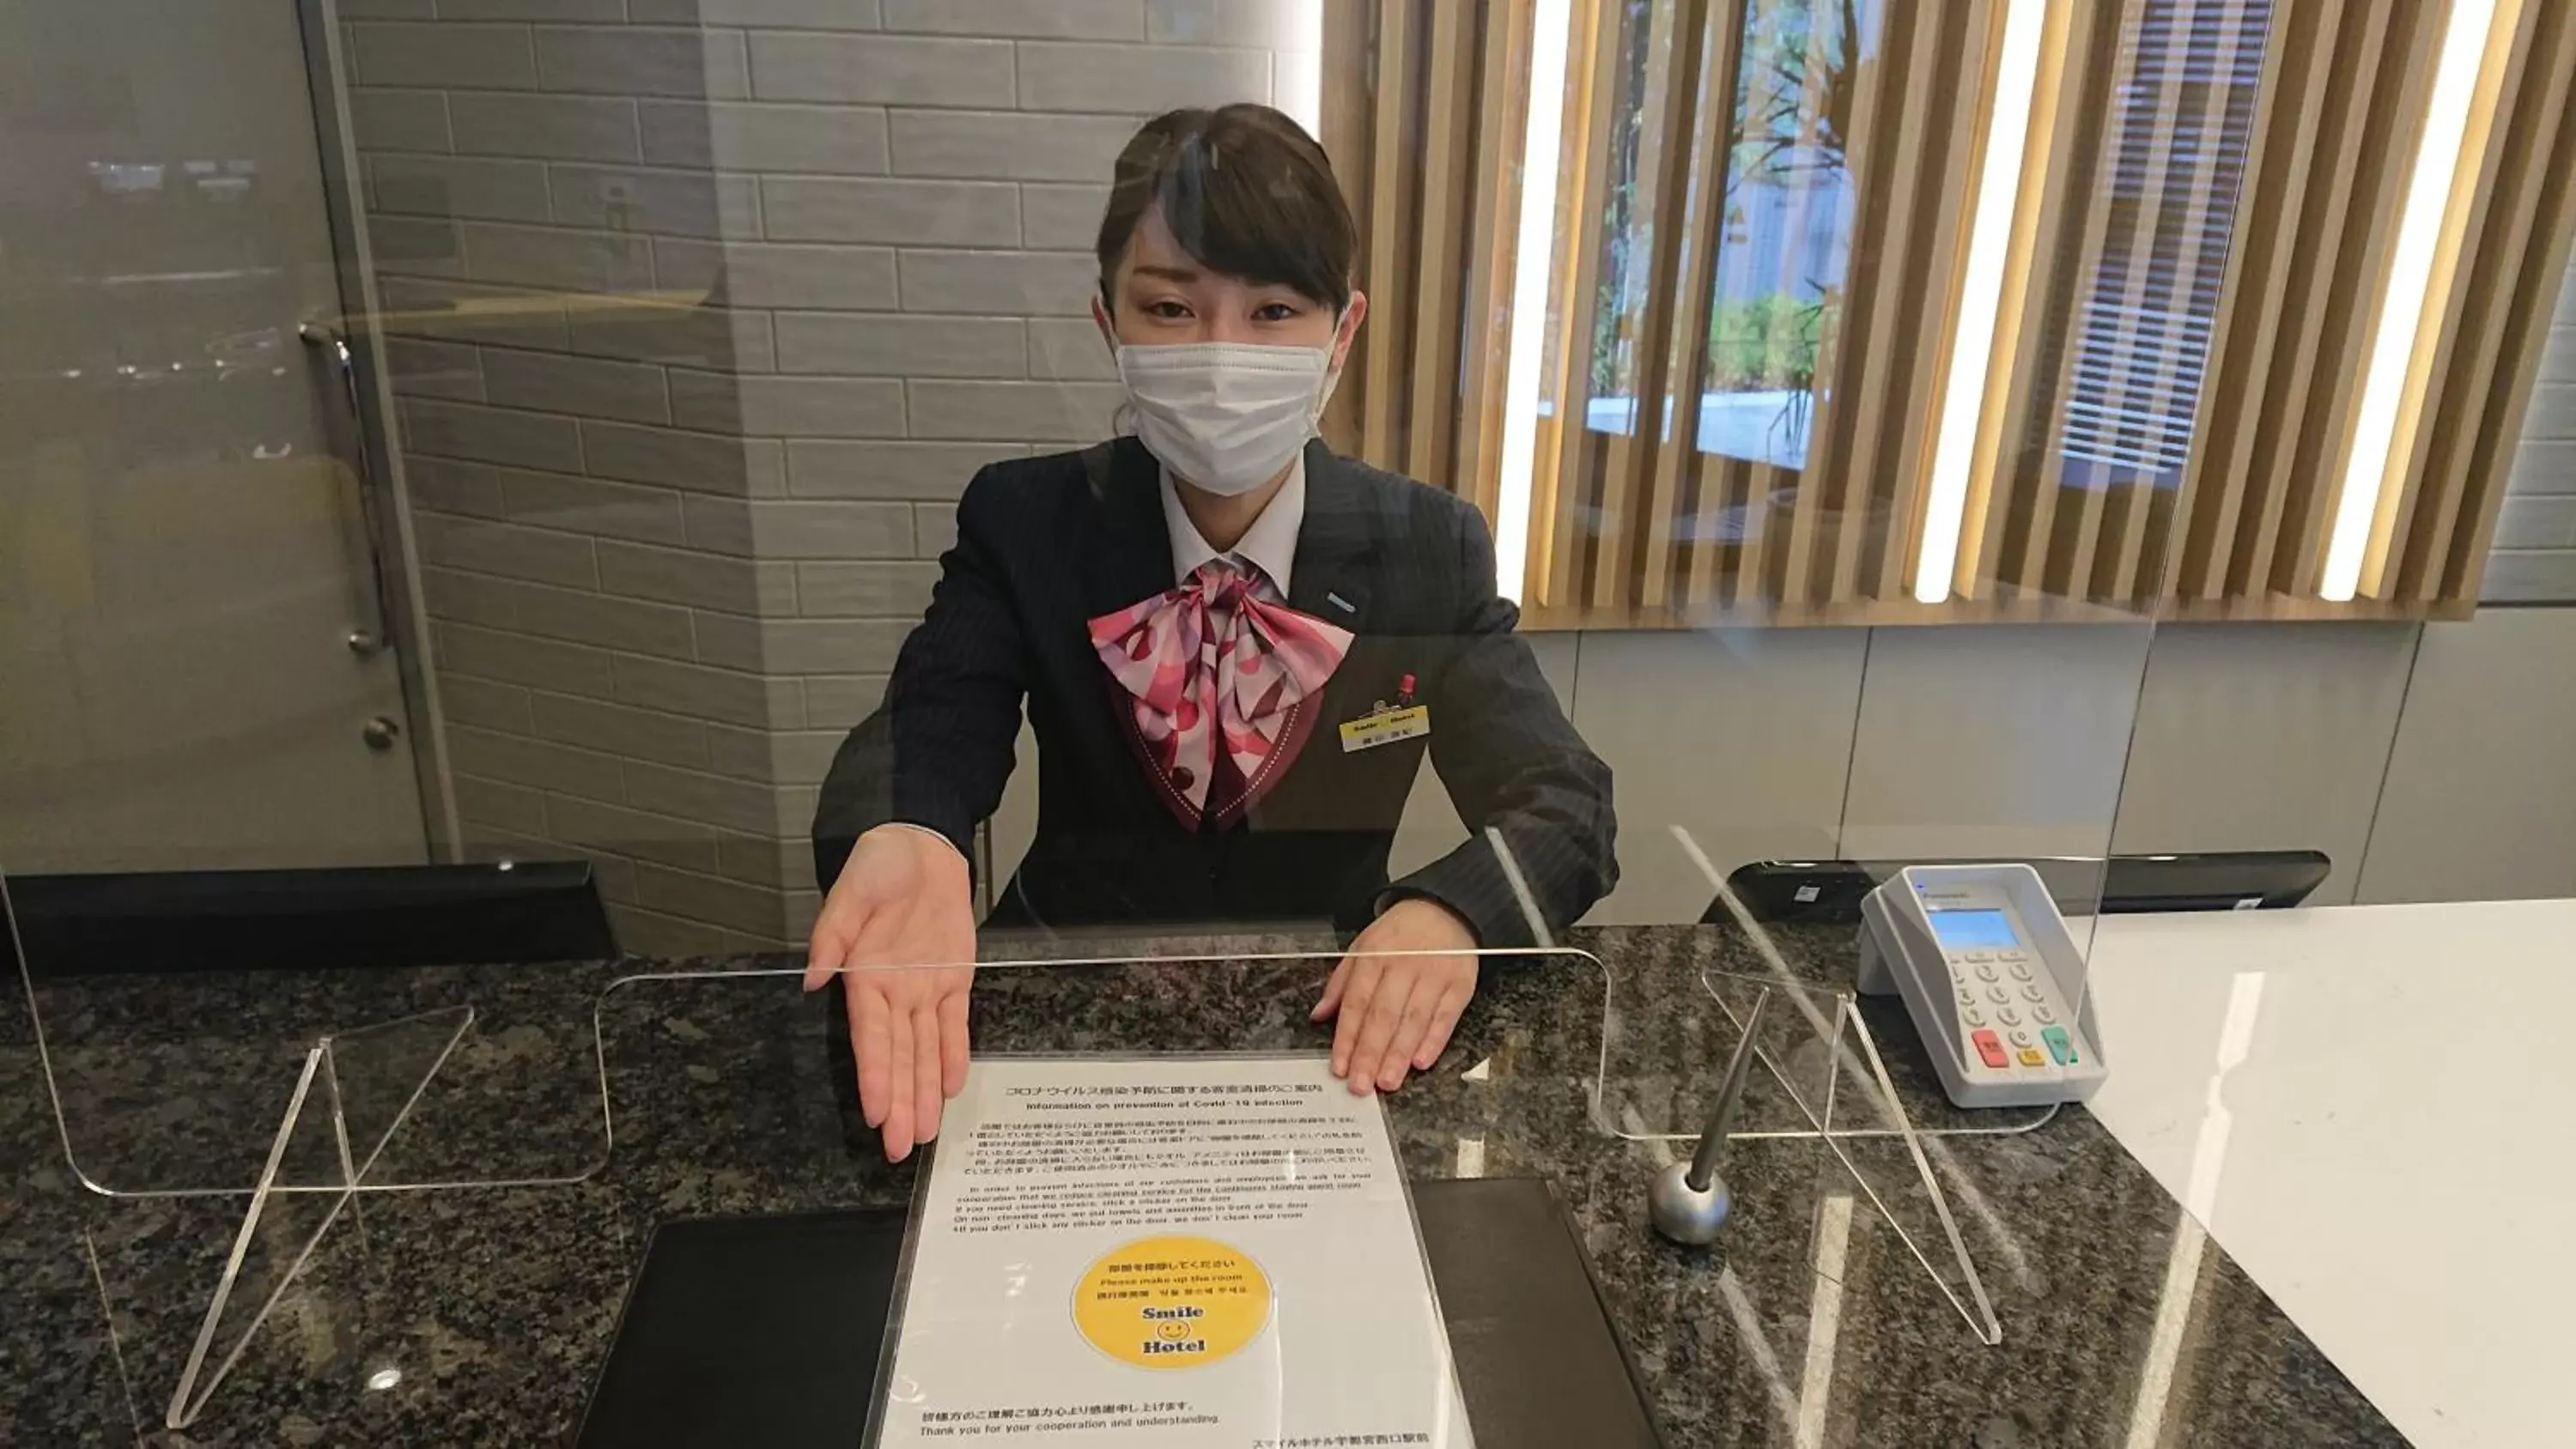 Activities in Smile Hotel Aomori